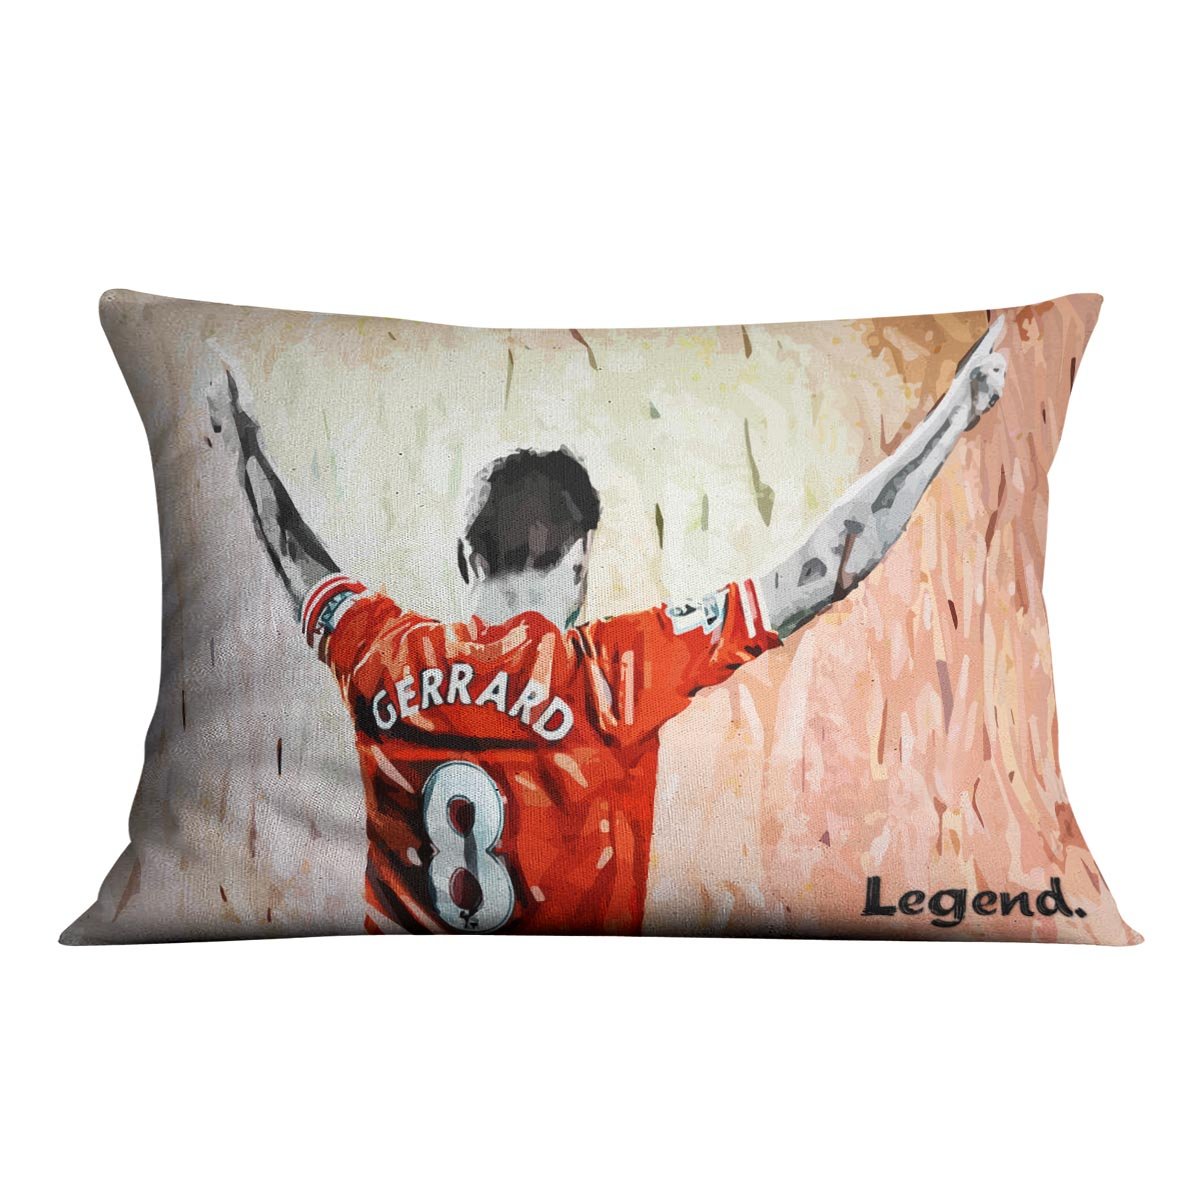 Steven Gerrard Legend Cushion